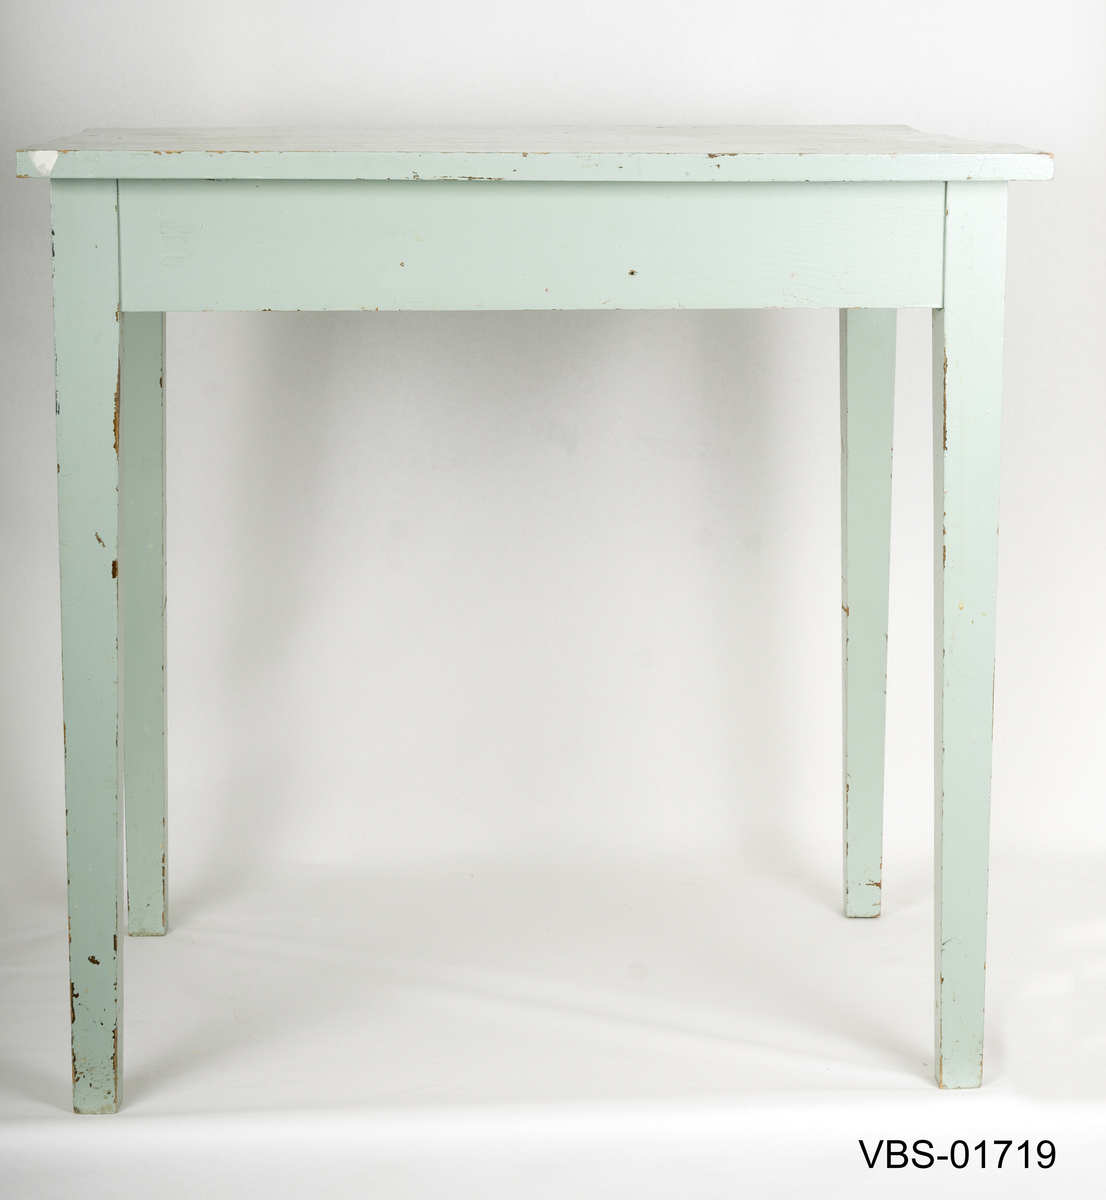 Enkelt bord med rette ben litt  avsmalnende nede. Håndverk arbeidsbord.
Bordplaten er laget av tre limte brett og med innvendige forsterkninger i hjørnene.